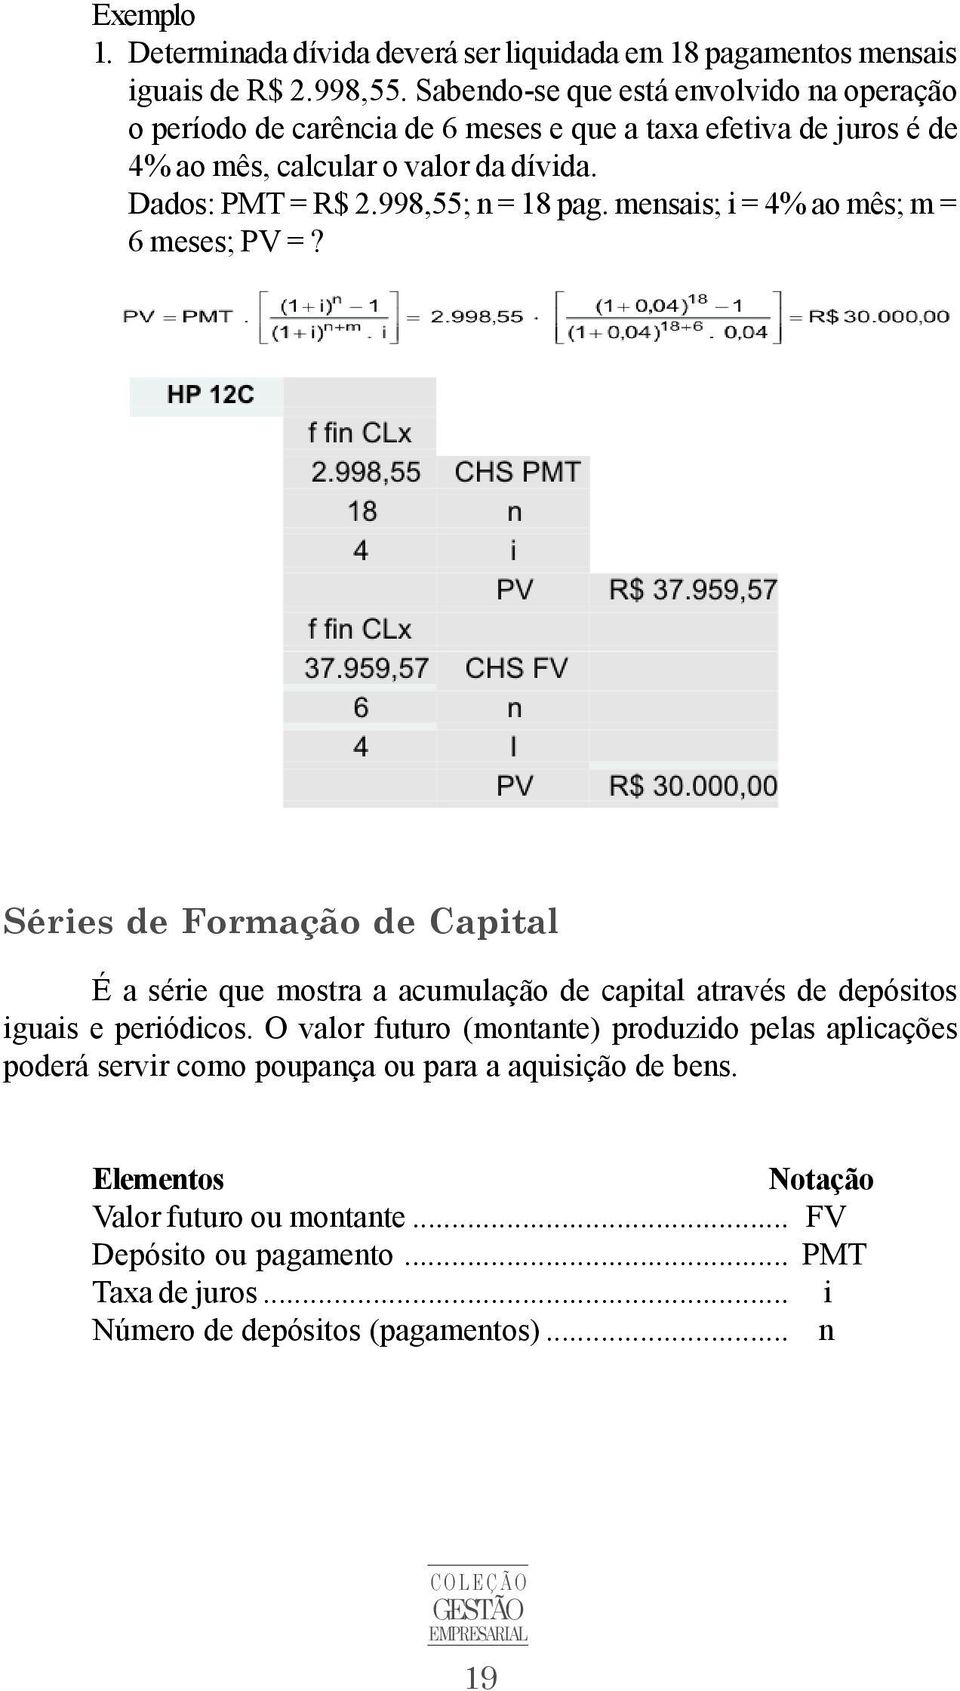 998,55; n = 18 pag. mensais; i = 4% ao mês; m = 6 meses; PV =? Séries de Formação de Capital É a série que mostra a acumulação de capital através de depósitos iguais e periódicos.